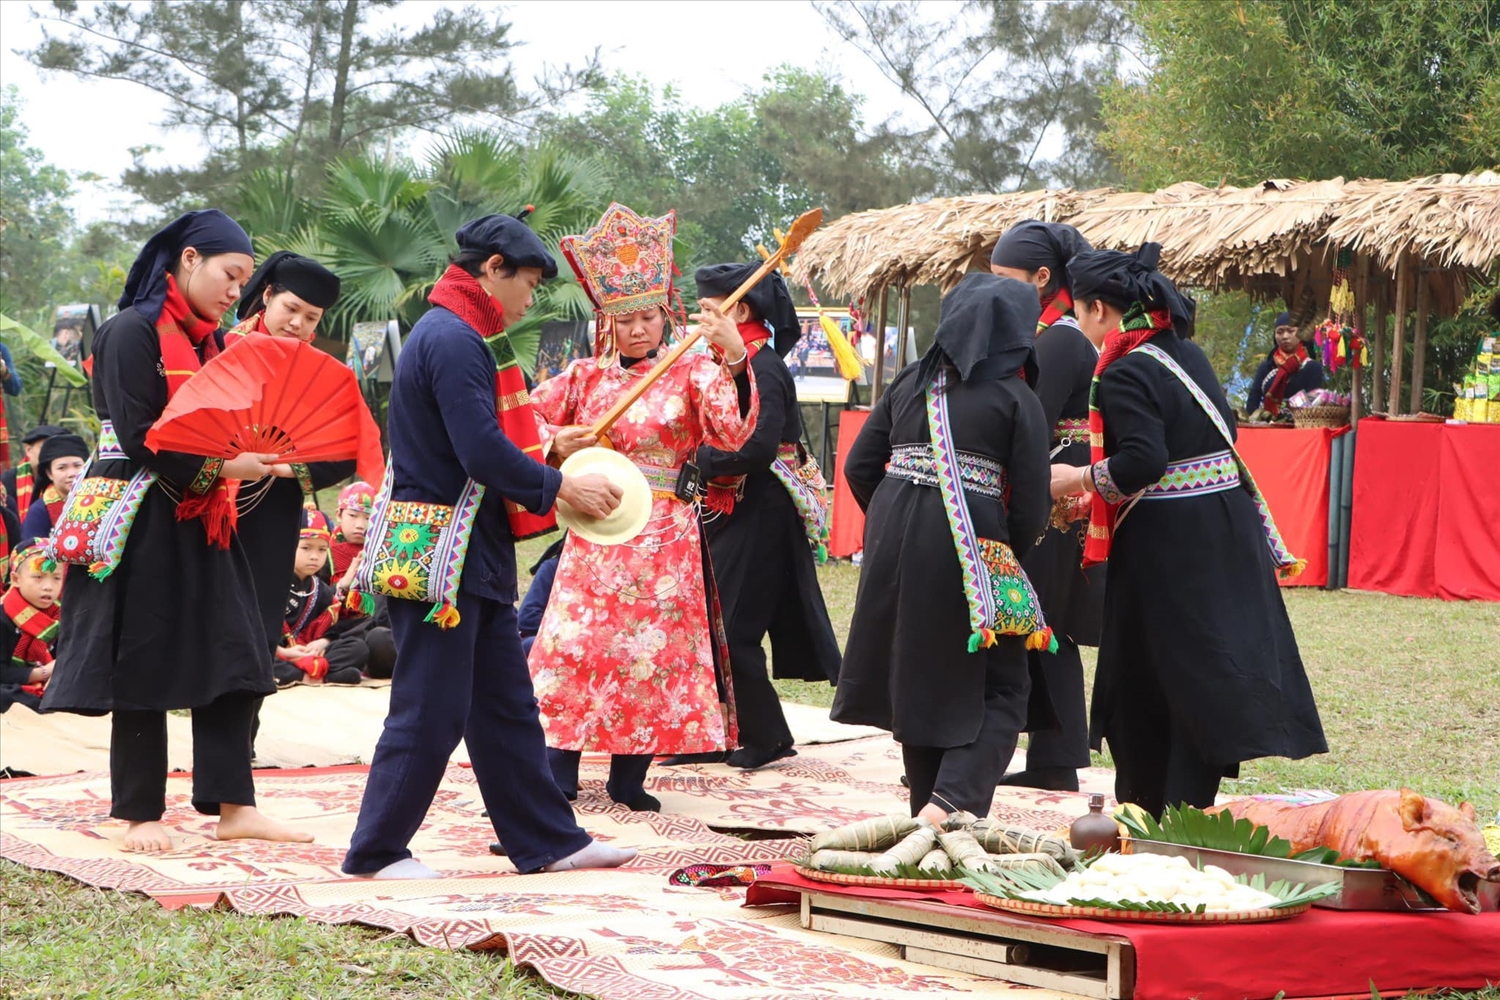 Lễ hội Lồng tồng là hoạt động tín ngưỡng gắn liền với nền nông nghiệp trồng trọt của đồng bào các dân tộc vùng núi phía Bắc